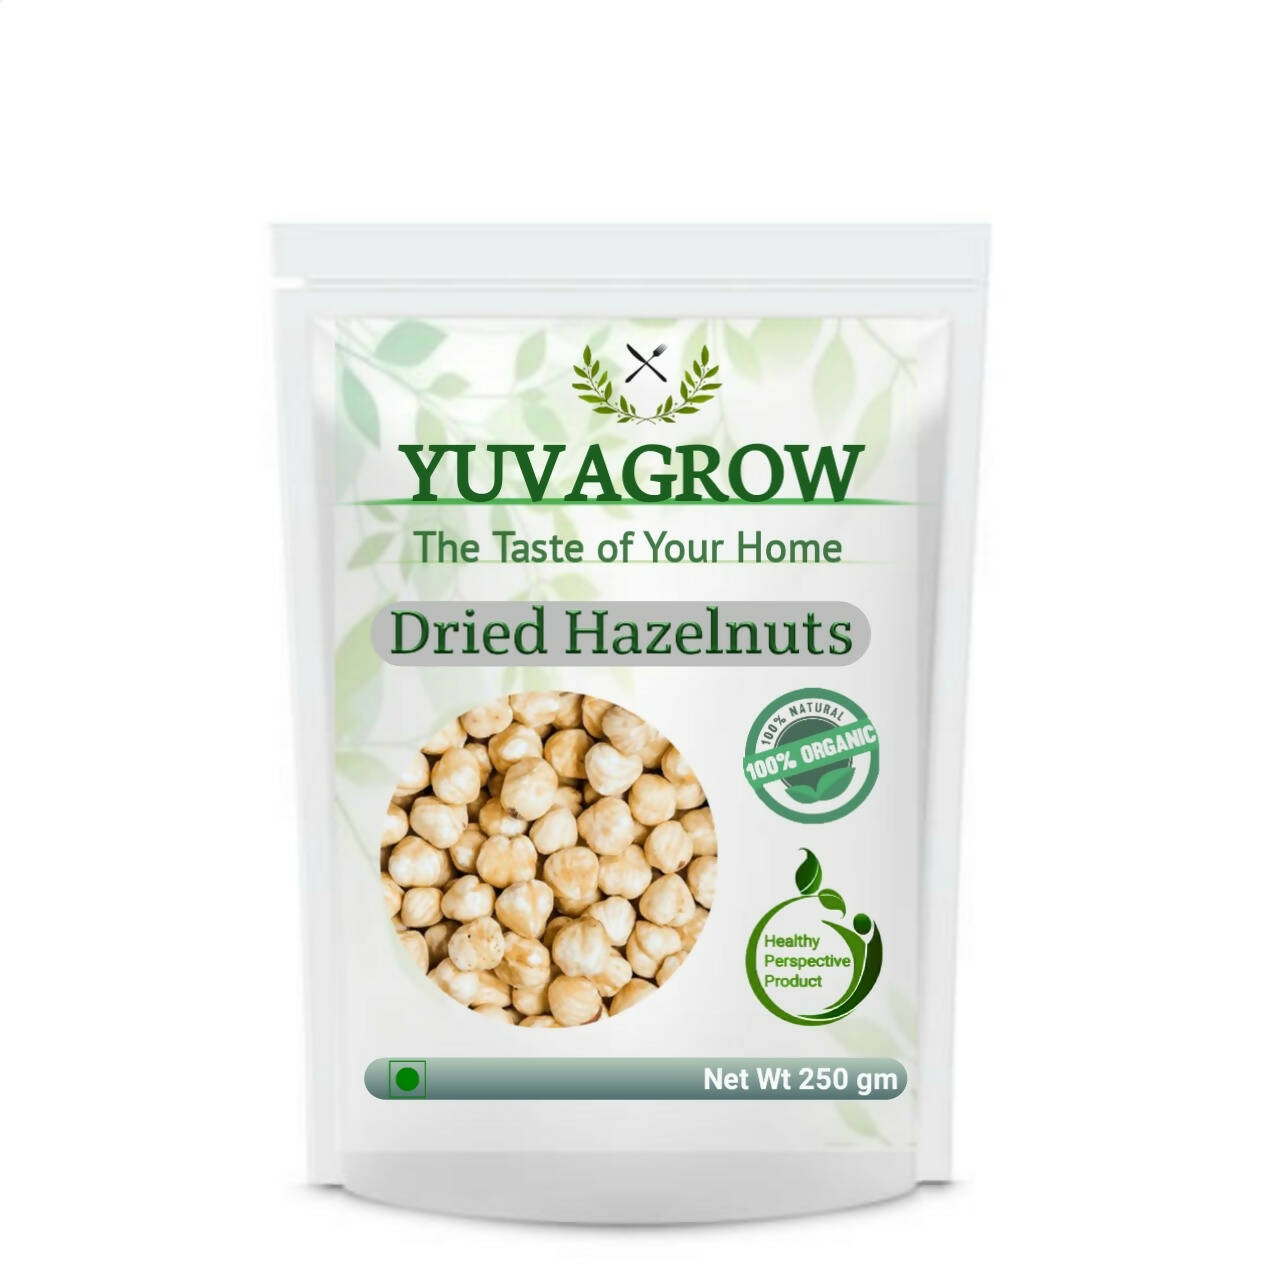 Yuvagrow Dried Hazelnuts - buy in USA, Australia, Canada